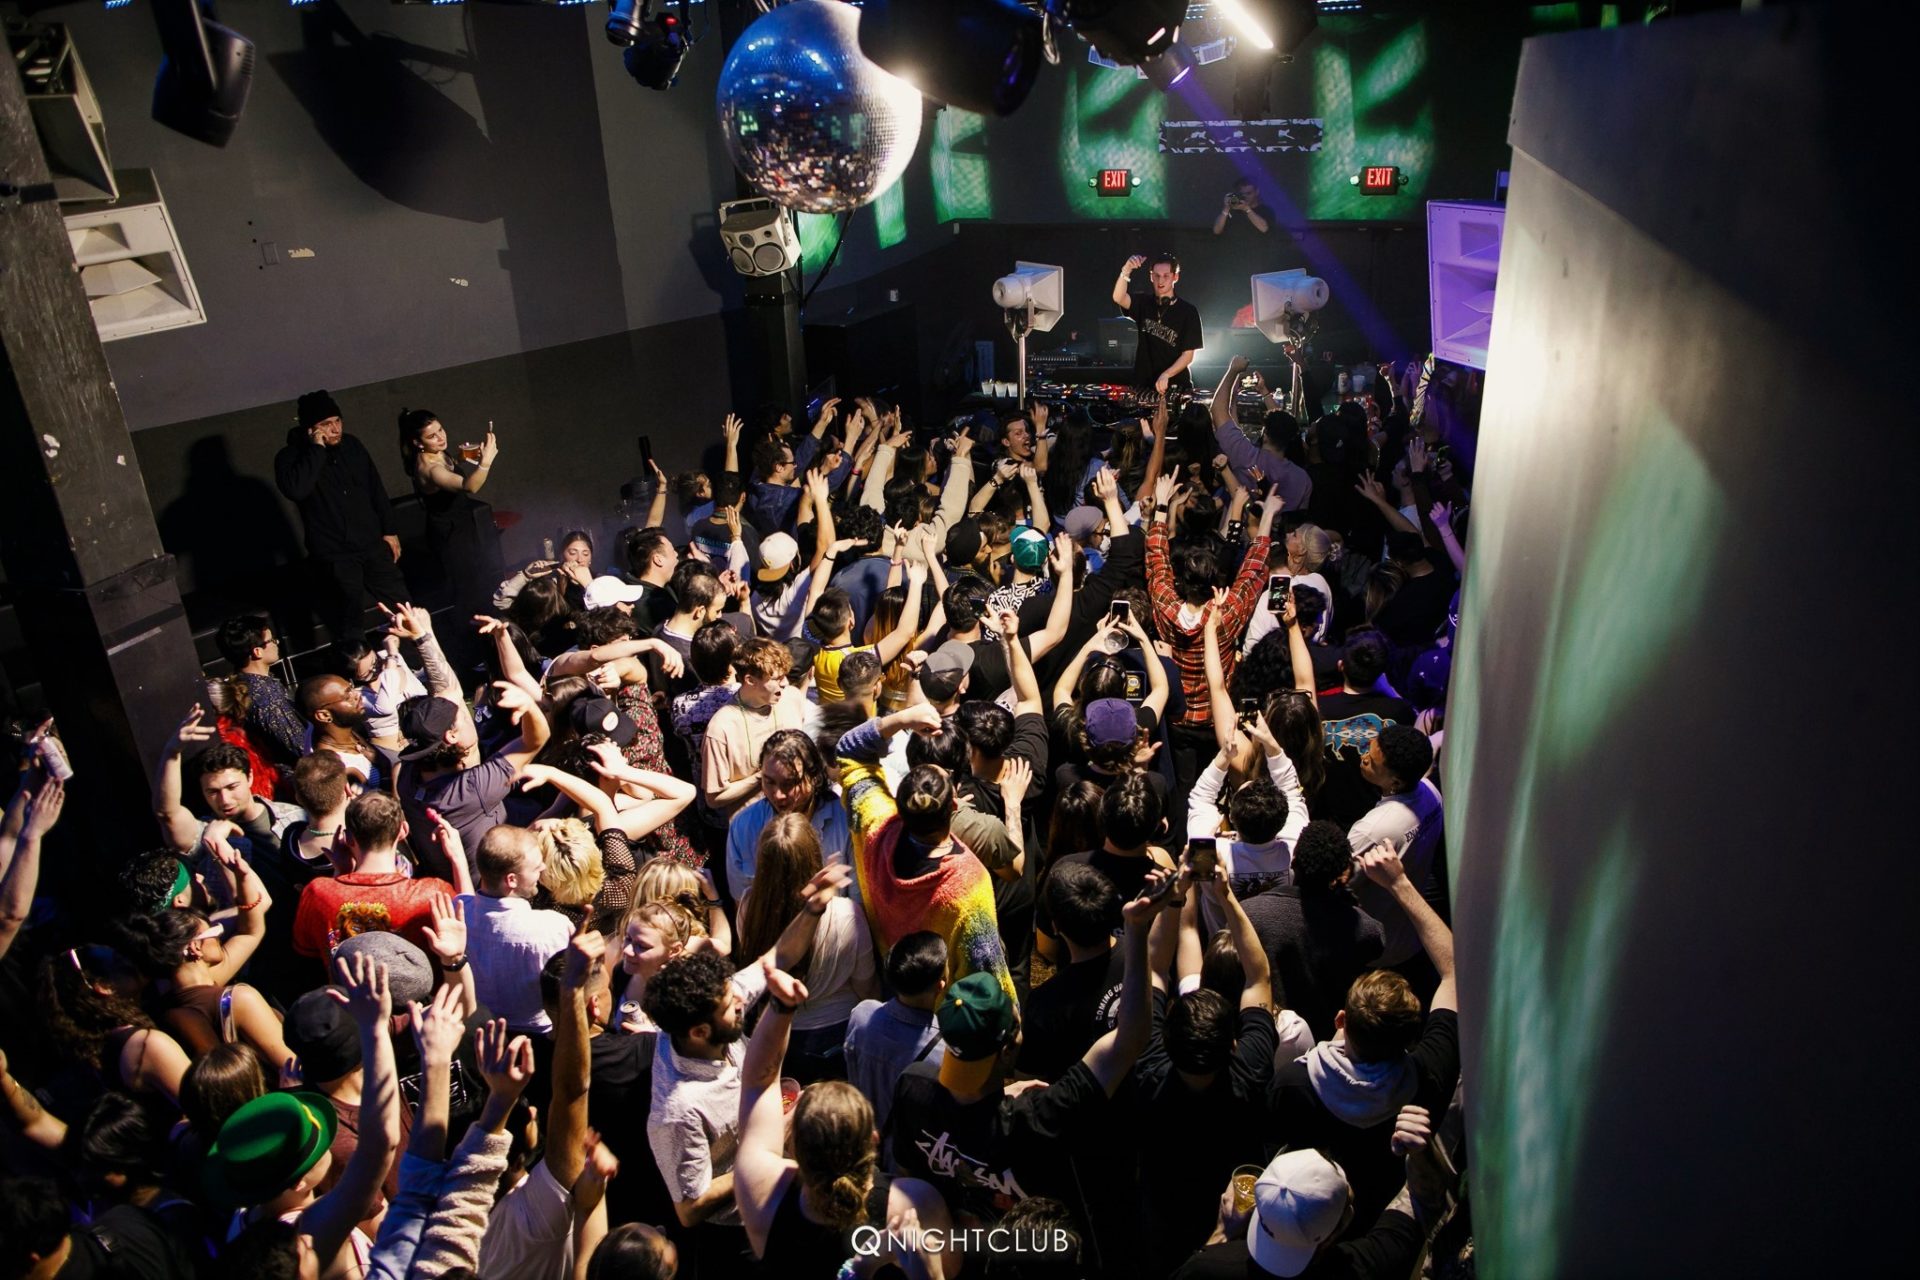 Behind crowd photo of Q Nightclub while Mau P is performing